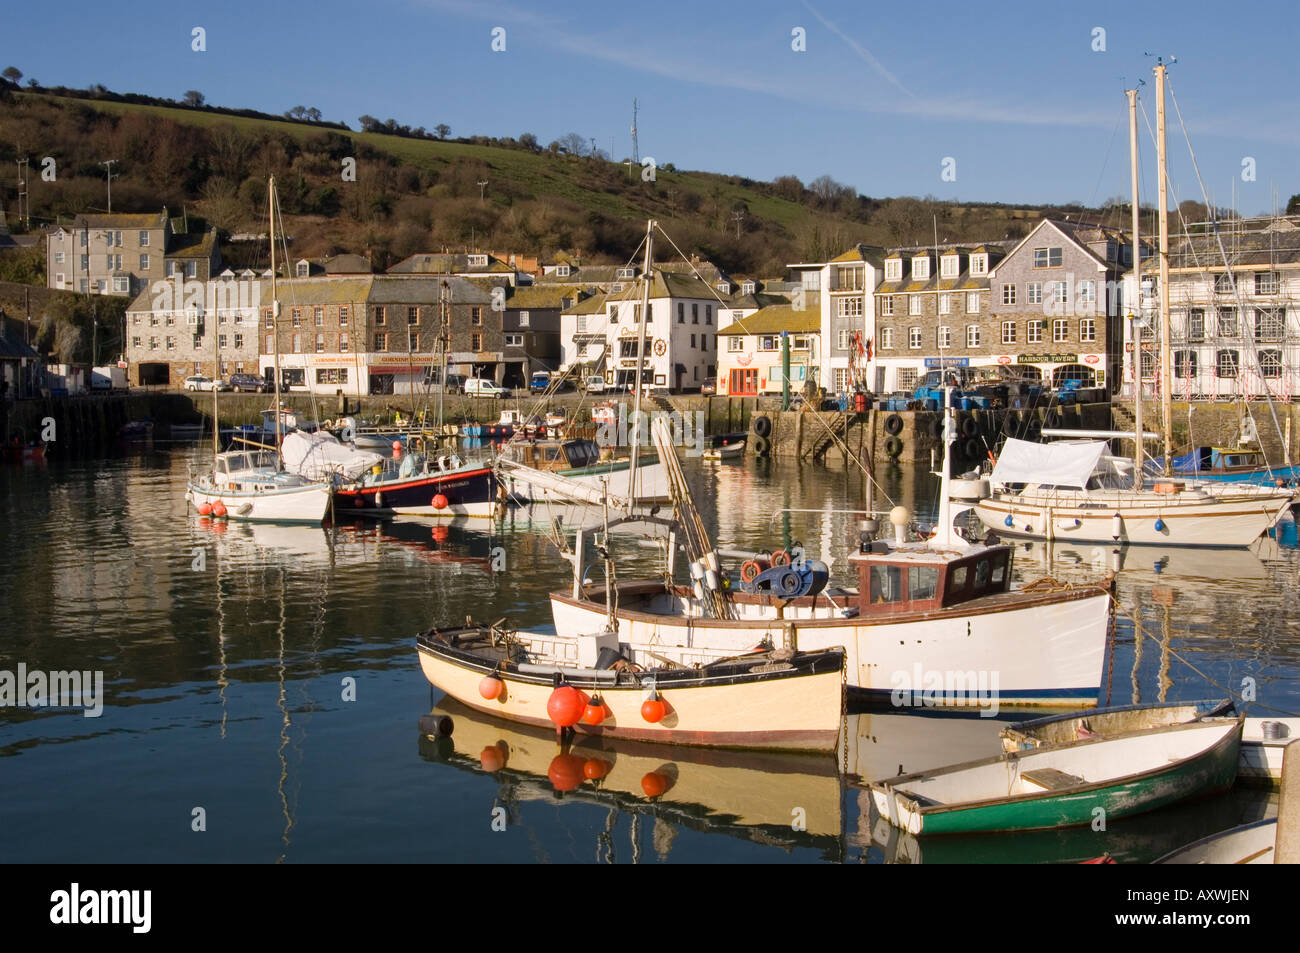 La colorata vecchia in legno barche da pesca nel porto, Mevagissey, Cornwall, England, Regno Unito, Europa Foto Stock